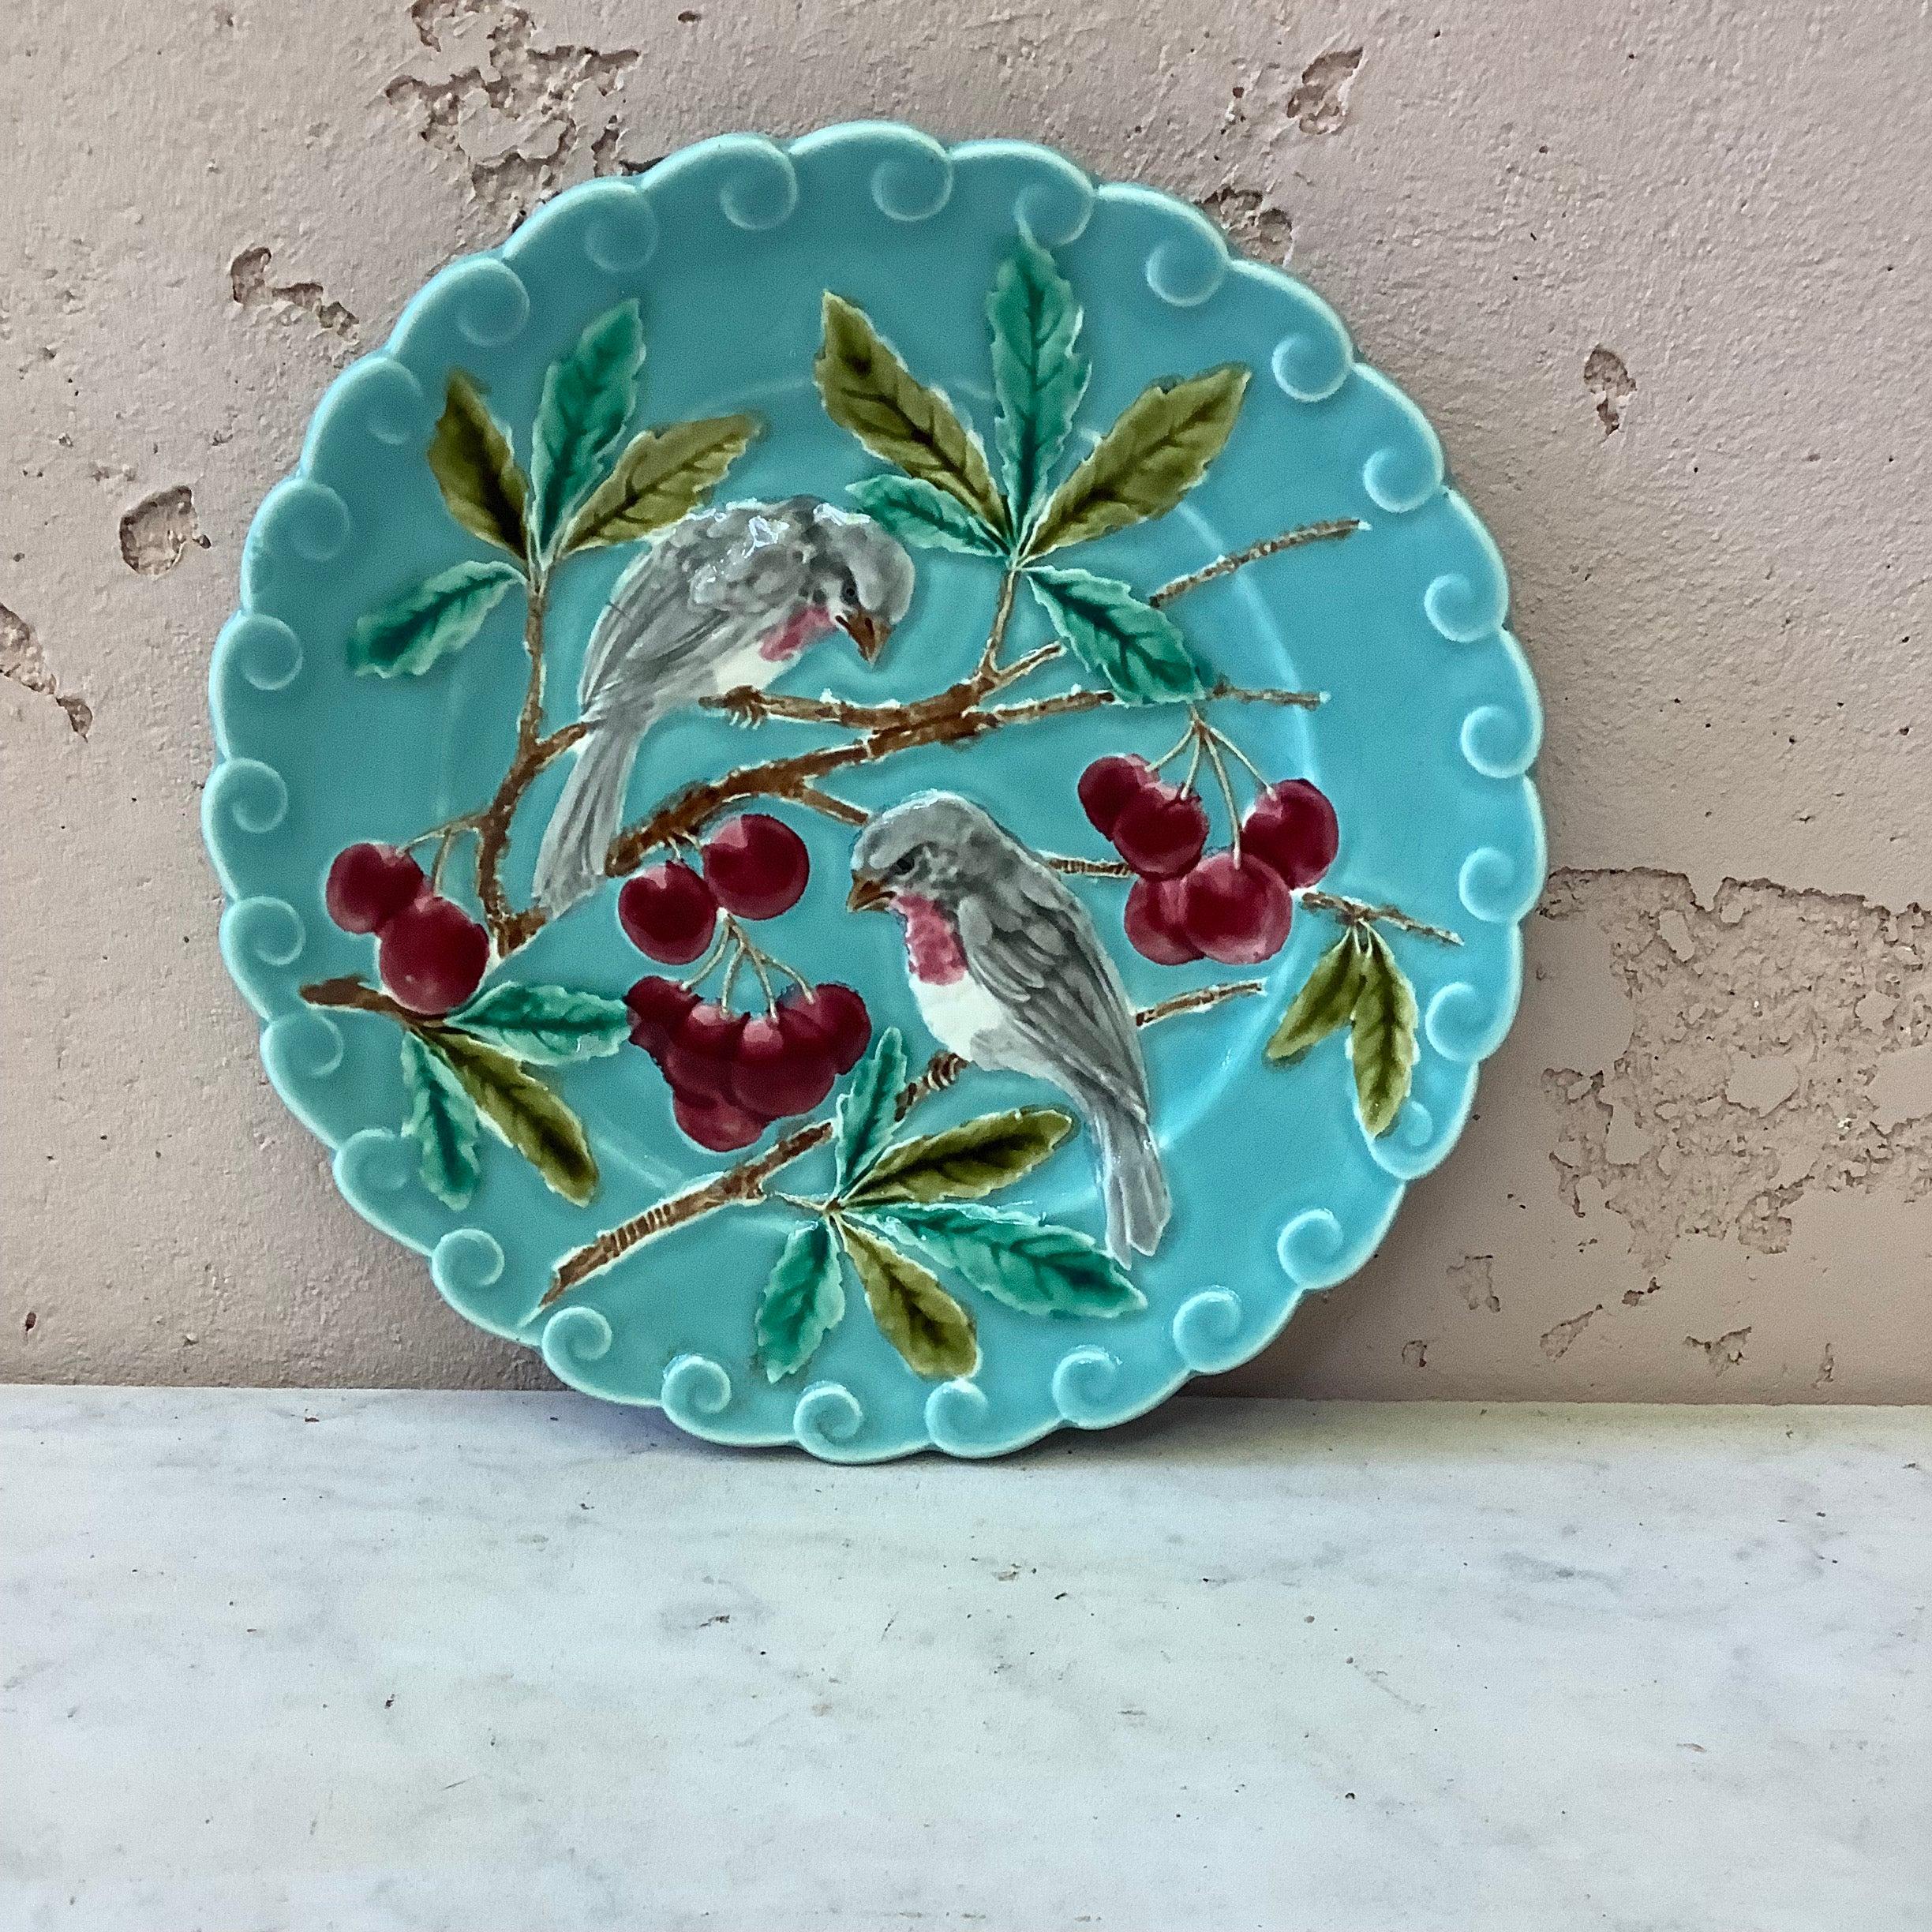 Ceramic French Majolica Cherries Plate, circa 1890